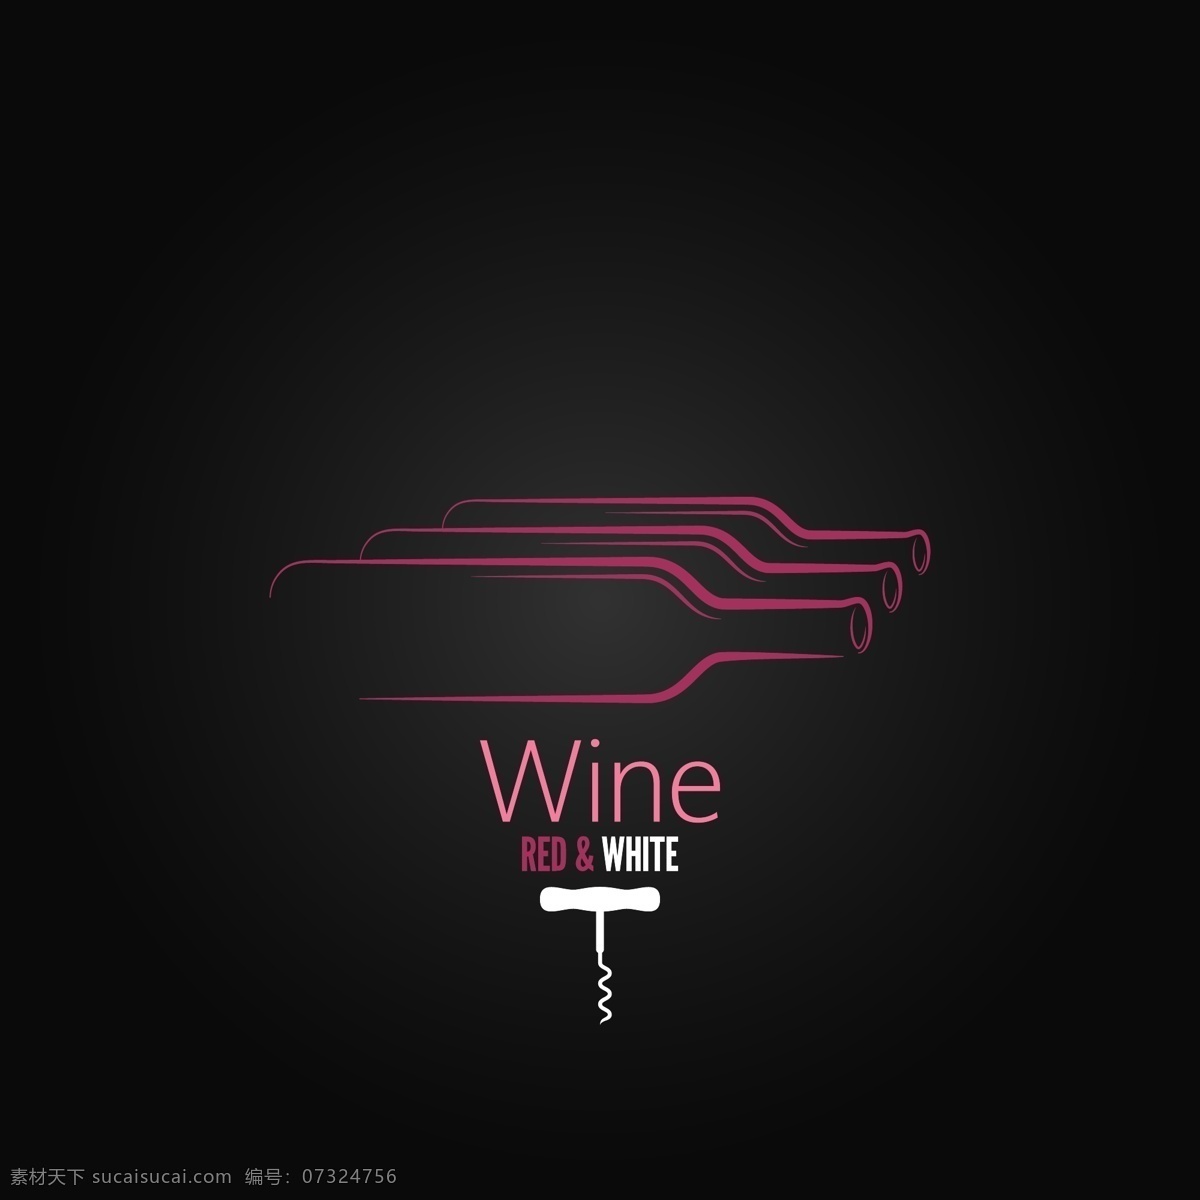 红酒logo 红酒标志 酒瓶 葡萄酒 标志设计 行业标志 标志图标 矢量素材 黑色